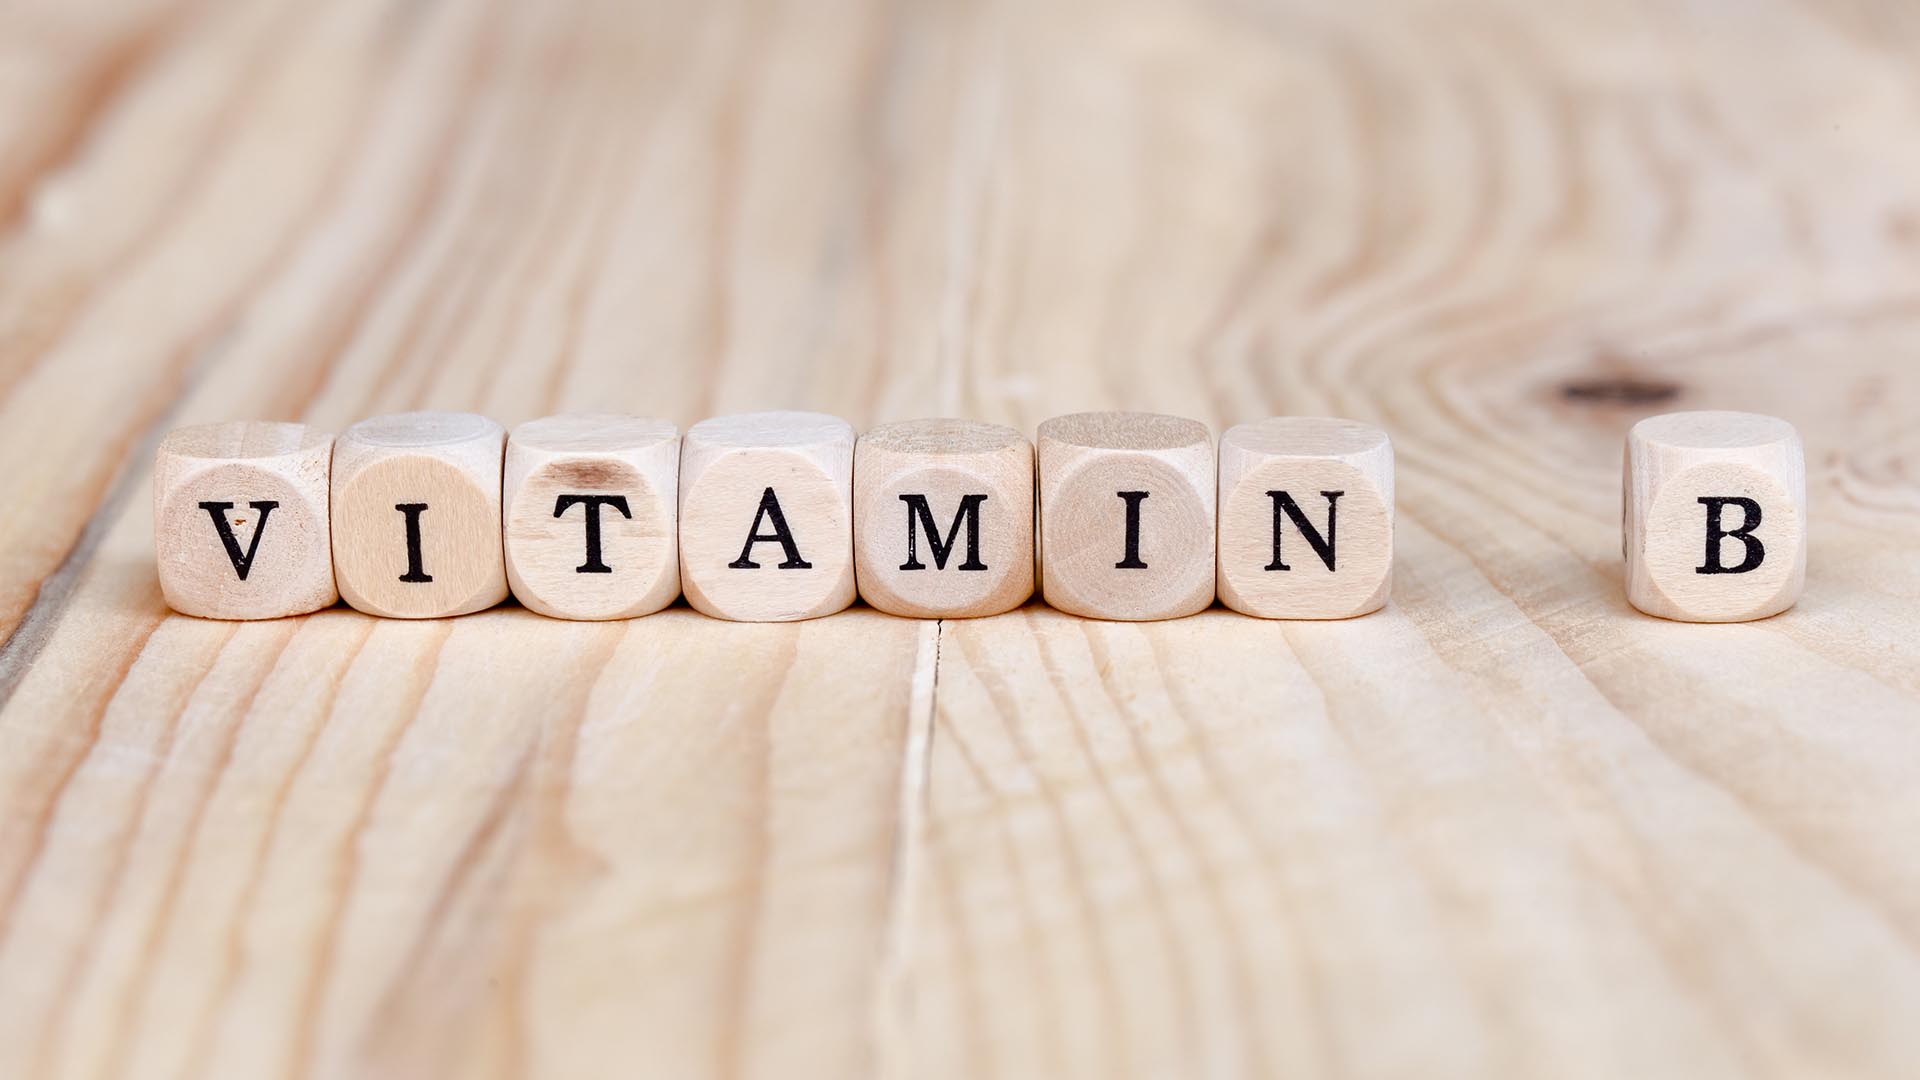 Depressione, demenza e declino mentale sono spesso associati alla mancanza di vitamine del gruppo B